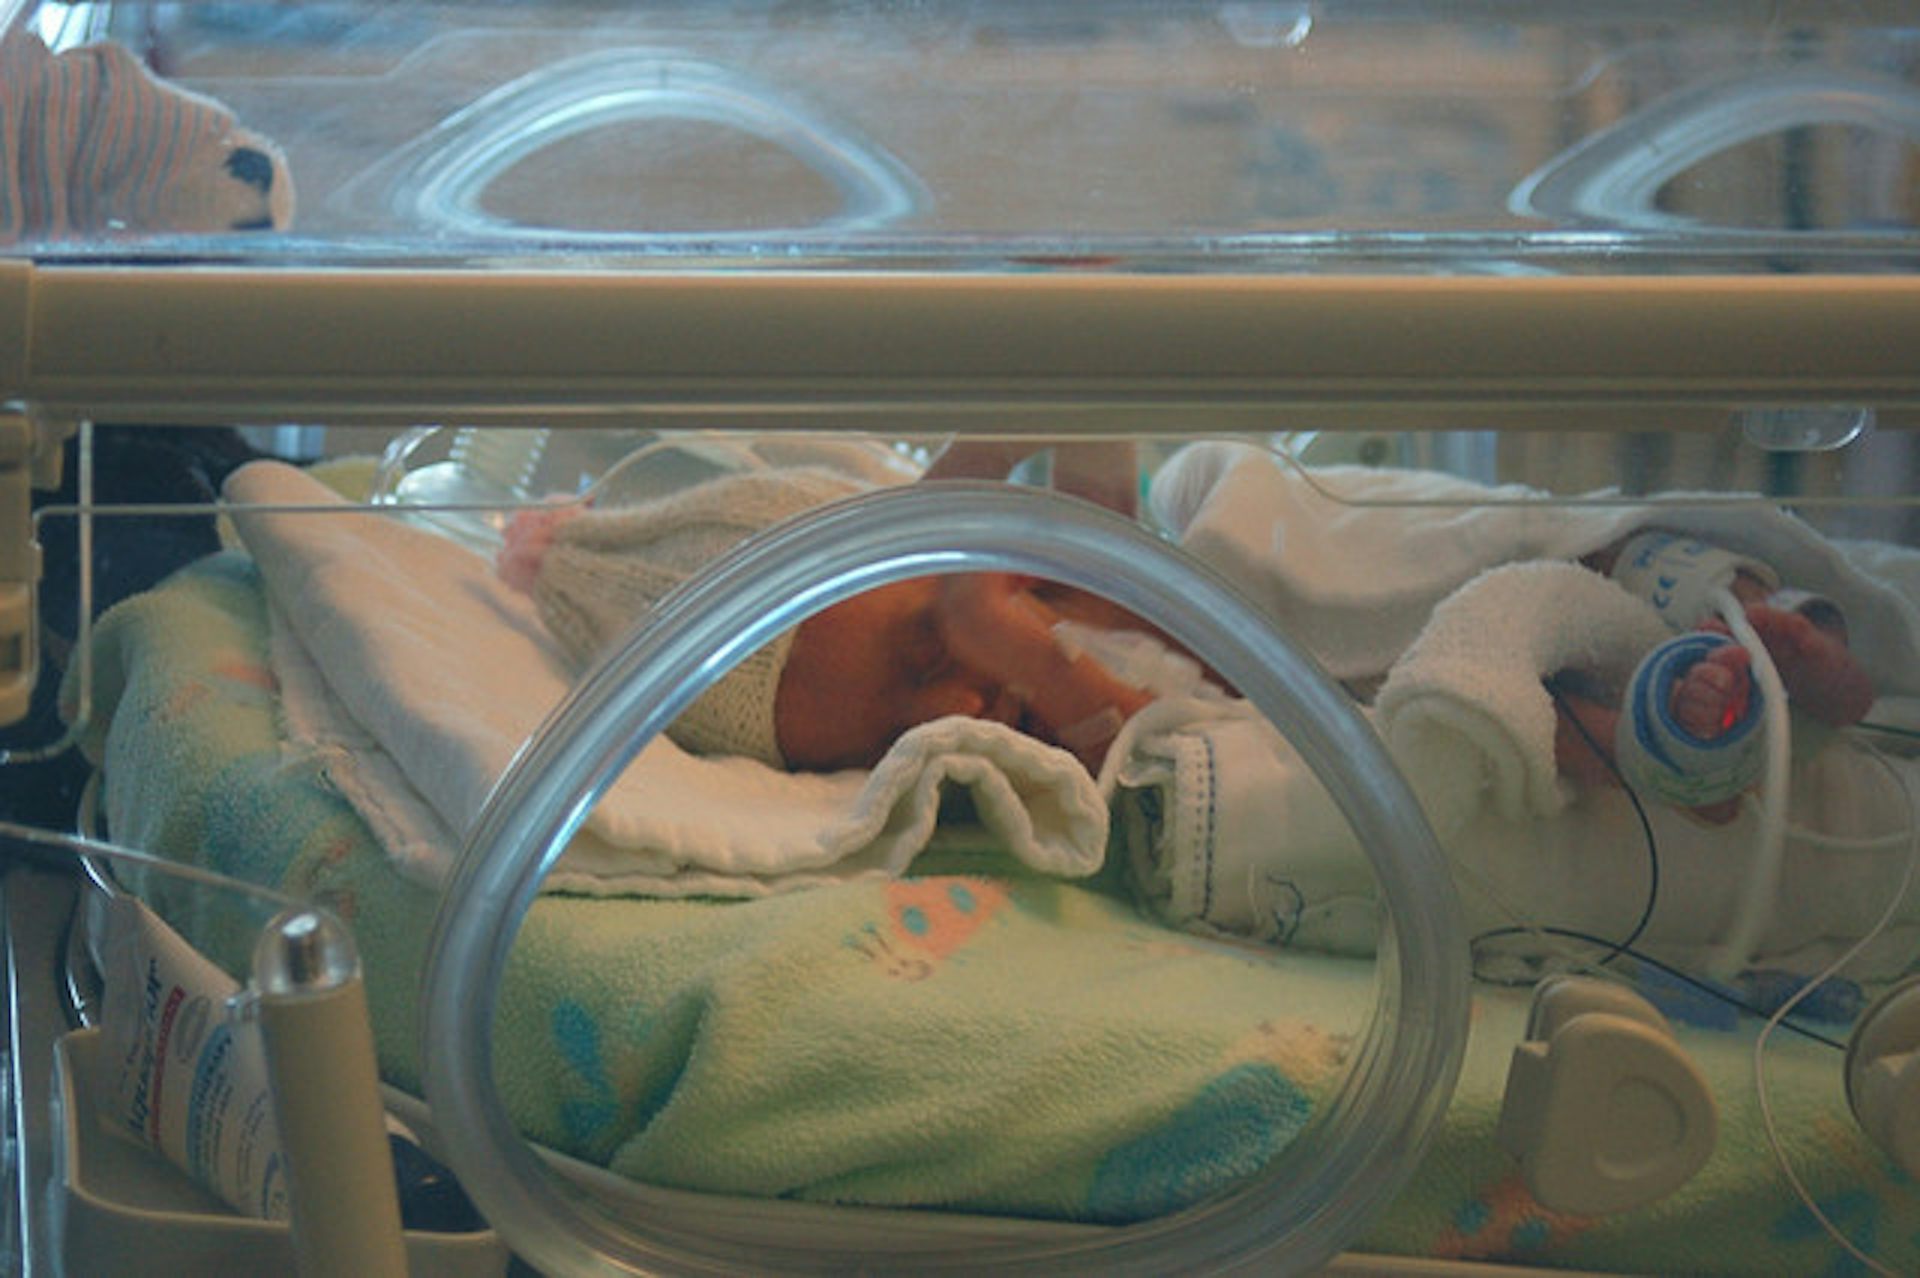 Раньше времени родилась. Недоношенные дети в роддоме. Недоношенный новорожденный. Недоношенный ребёнок в инкубаторе.